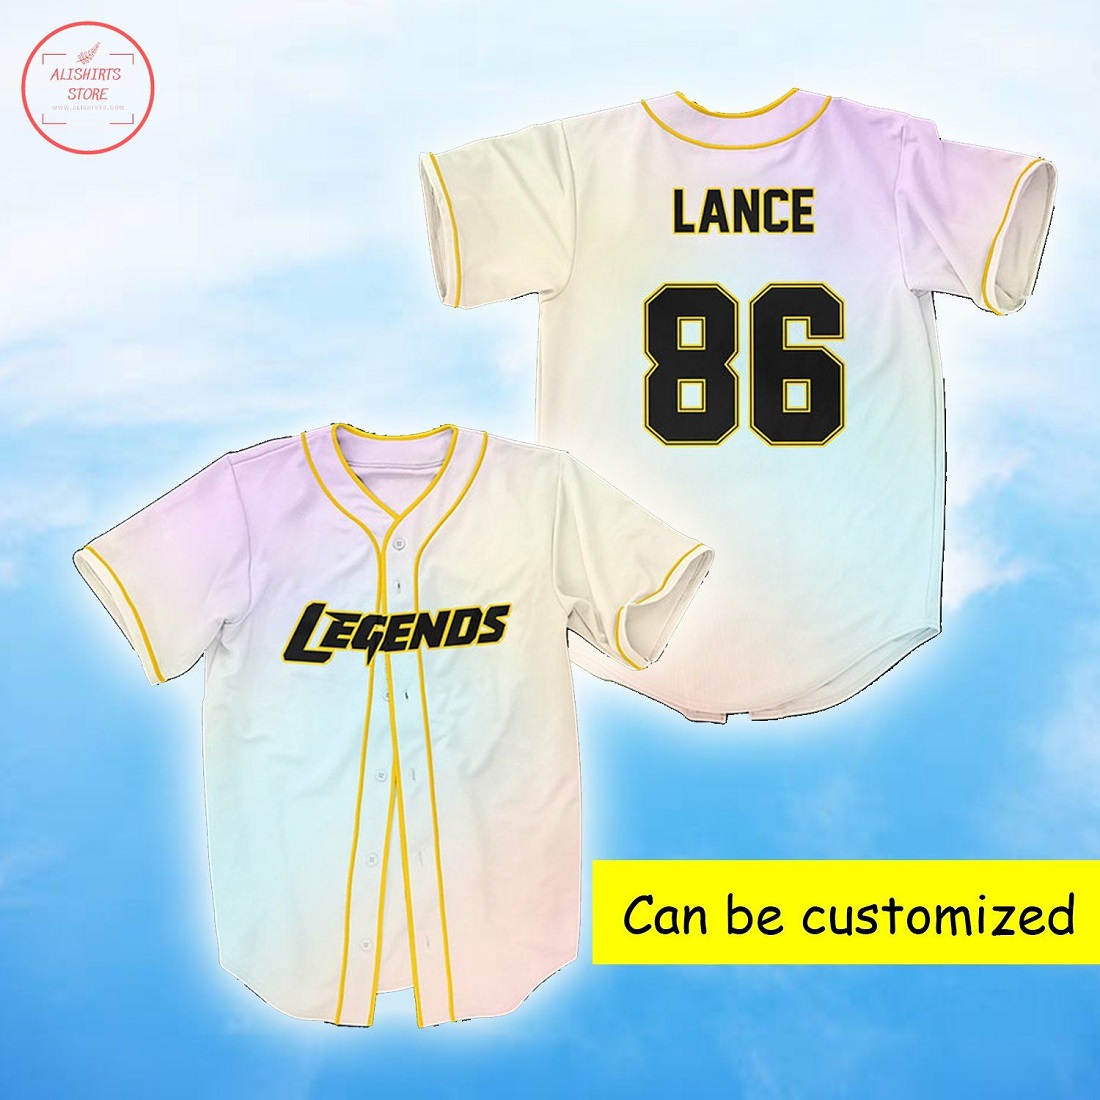 Legends Personalized Baseball Jersey